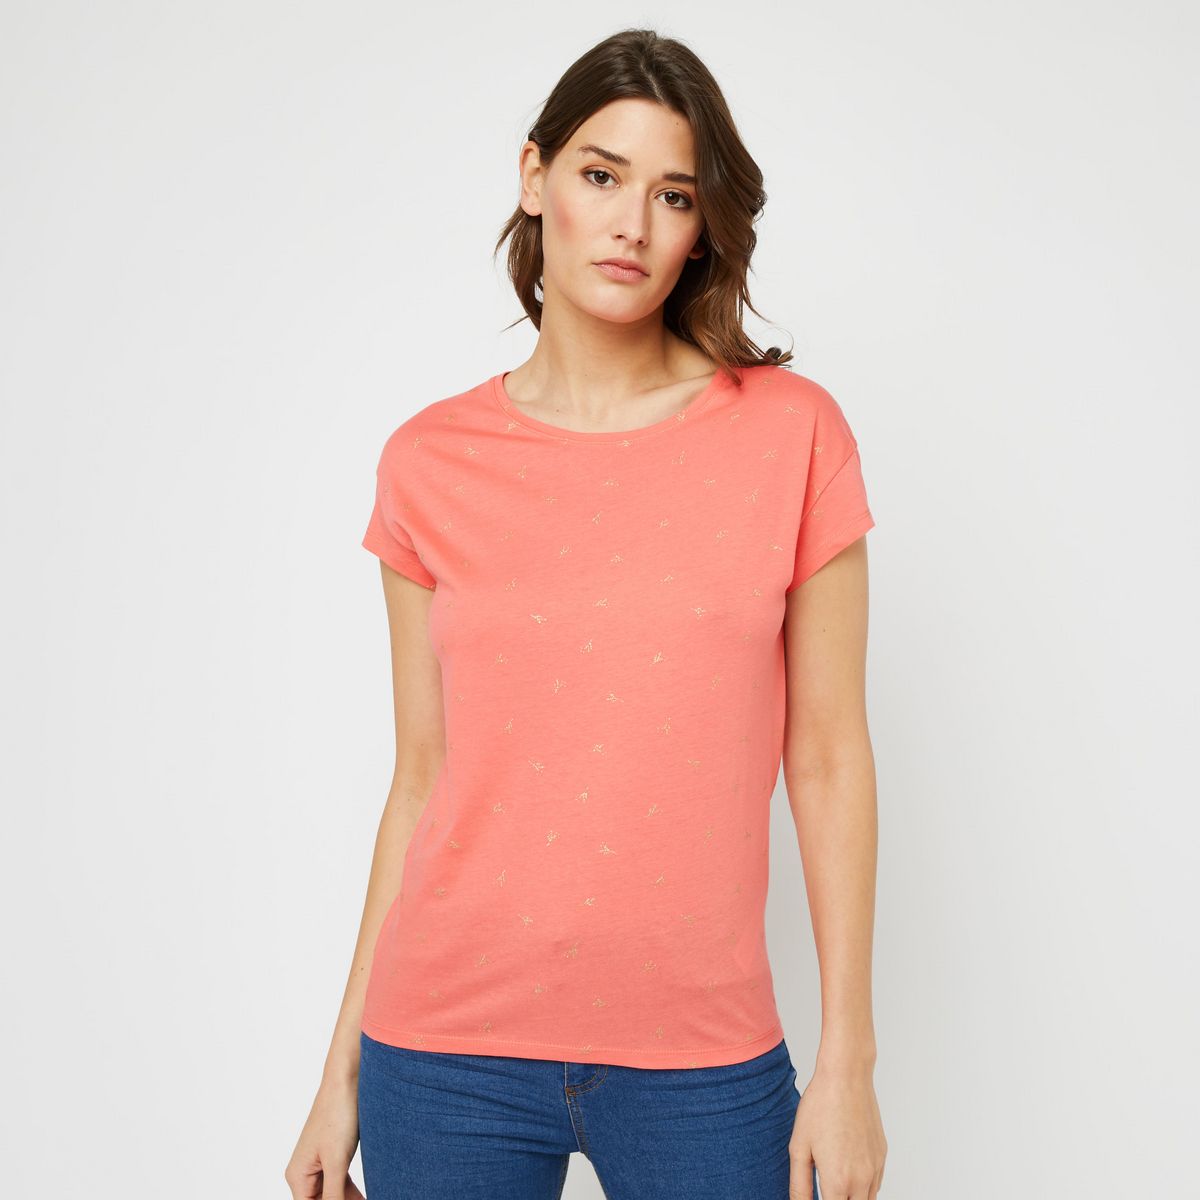 INEXTENSO T-shirt Rose femme